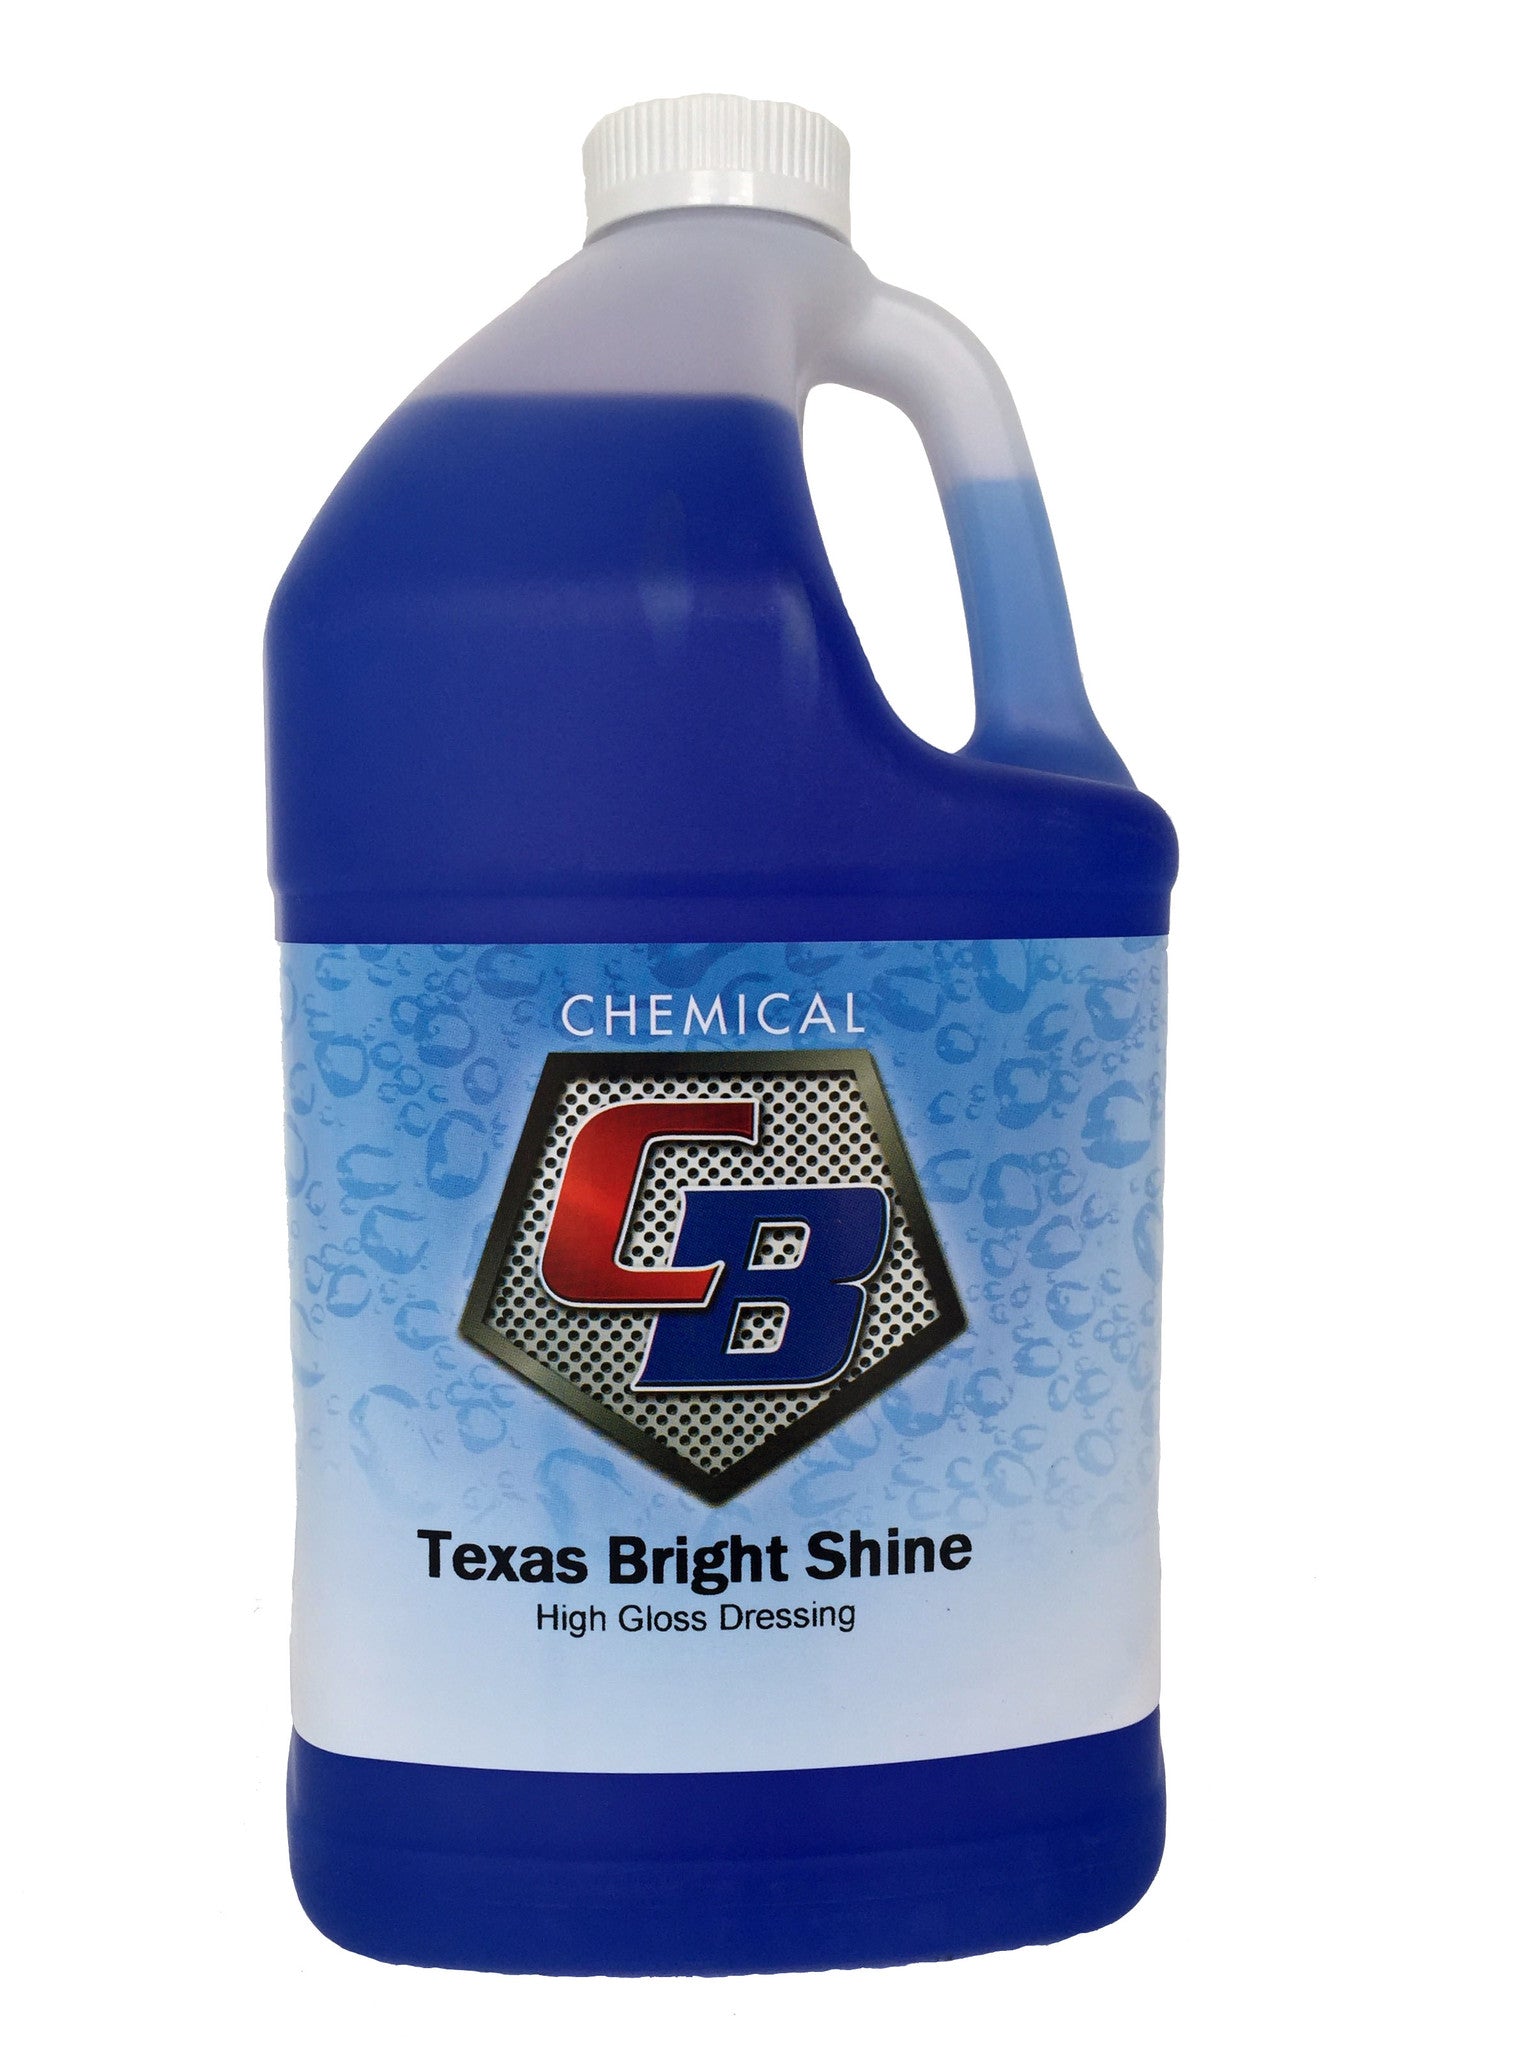 Texas Bright Shine - C & B Chemical, Inc